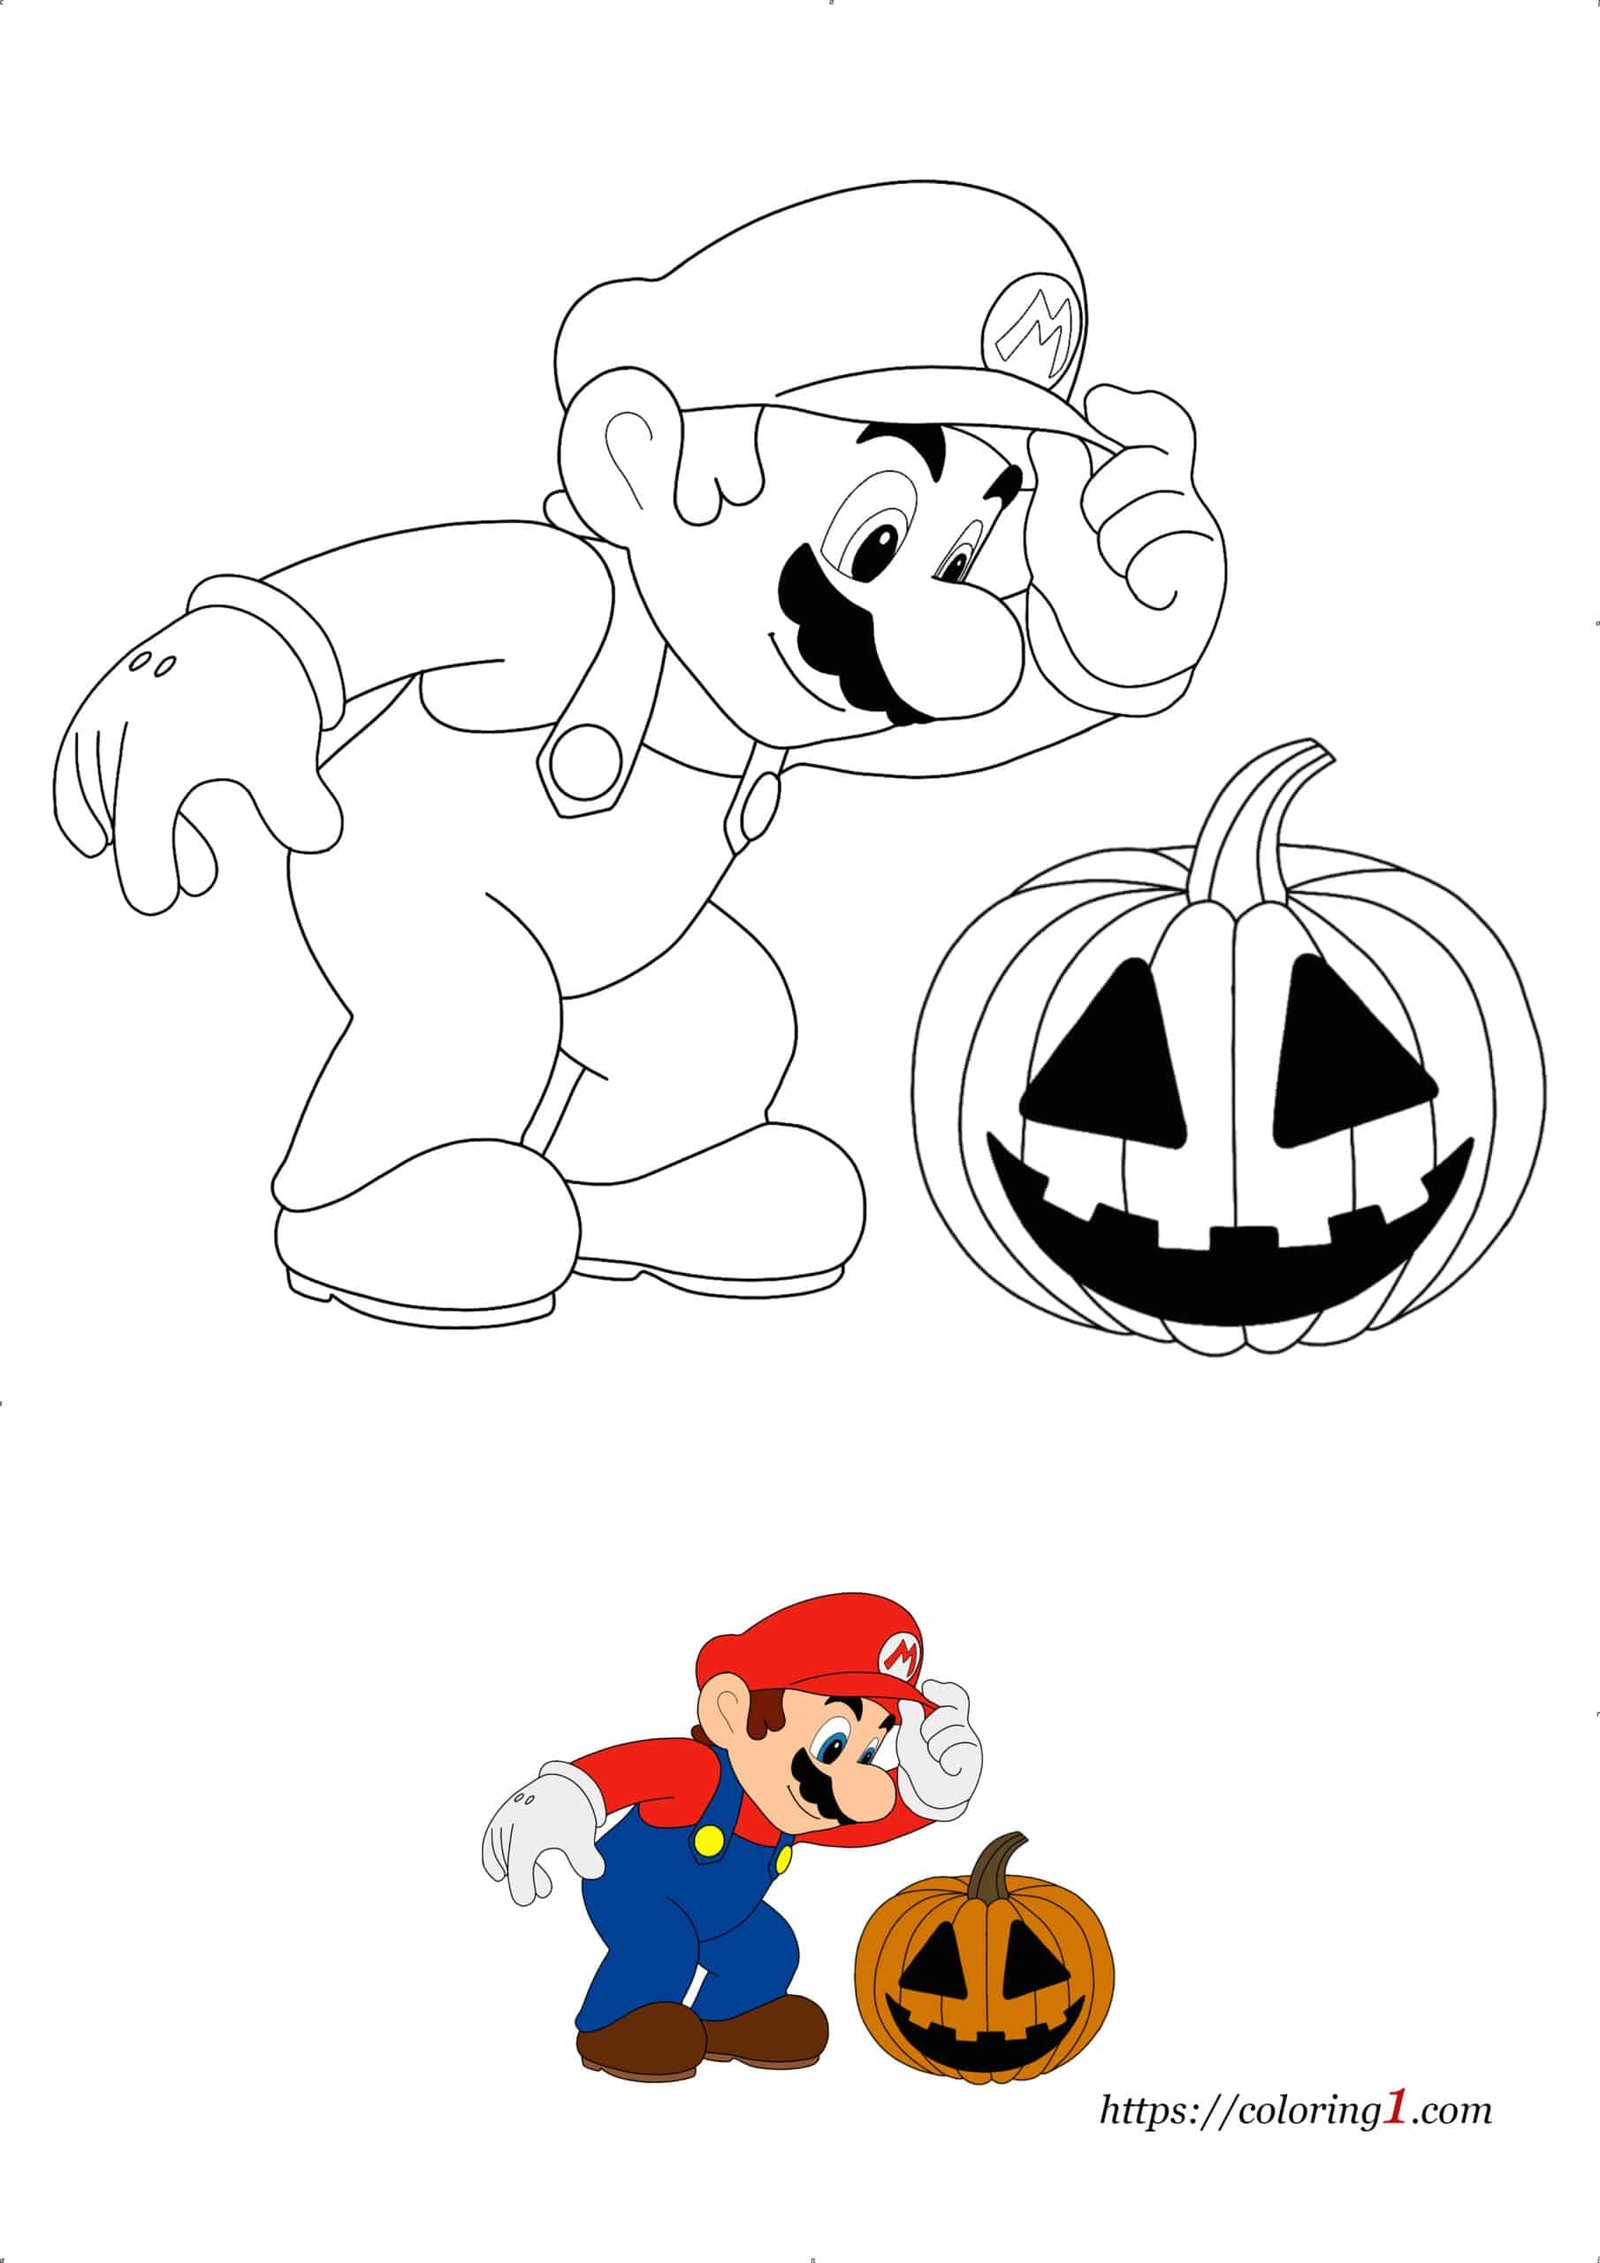 Mario met pompoen Halloween kleurplaat om af te drukken voor kinderen en volwassenen